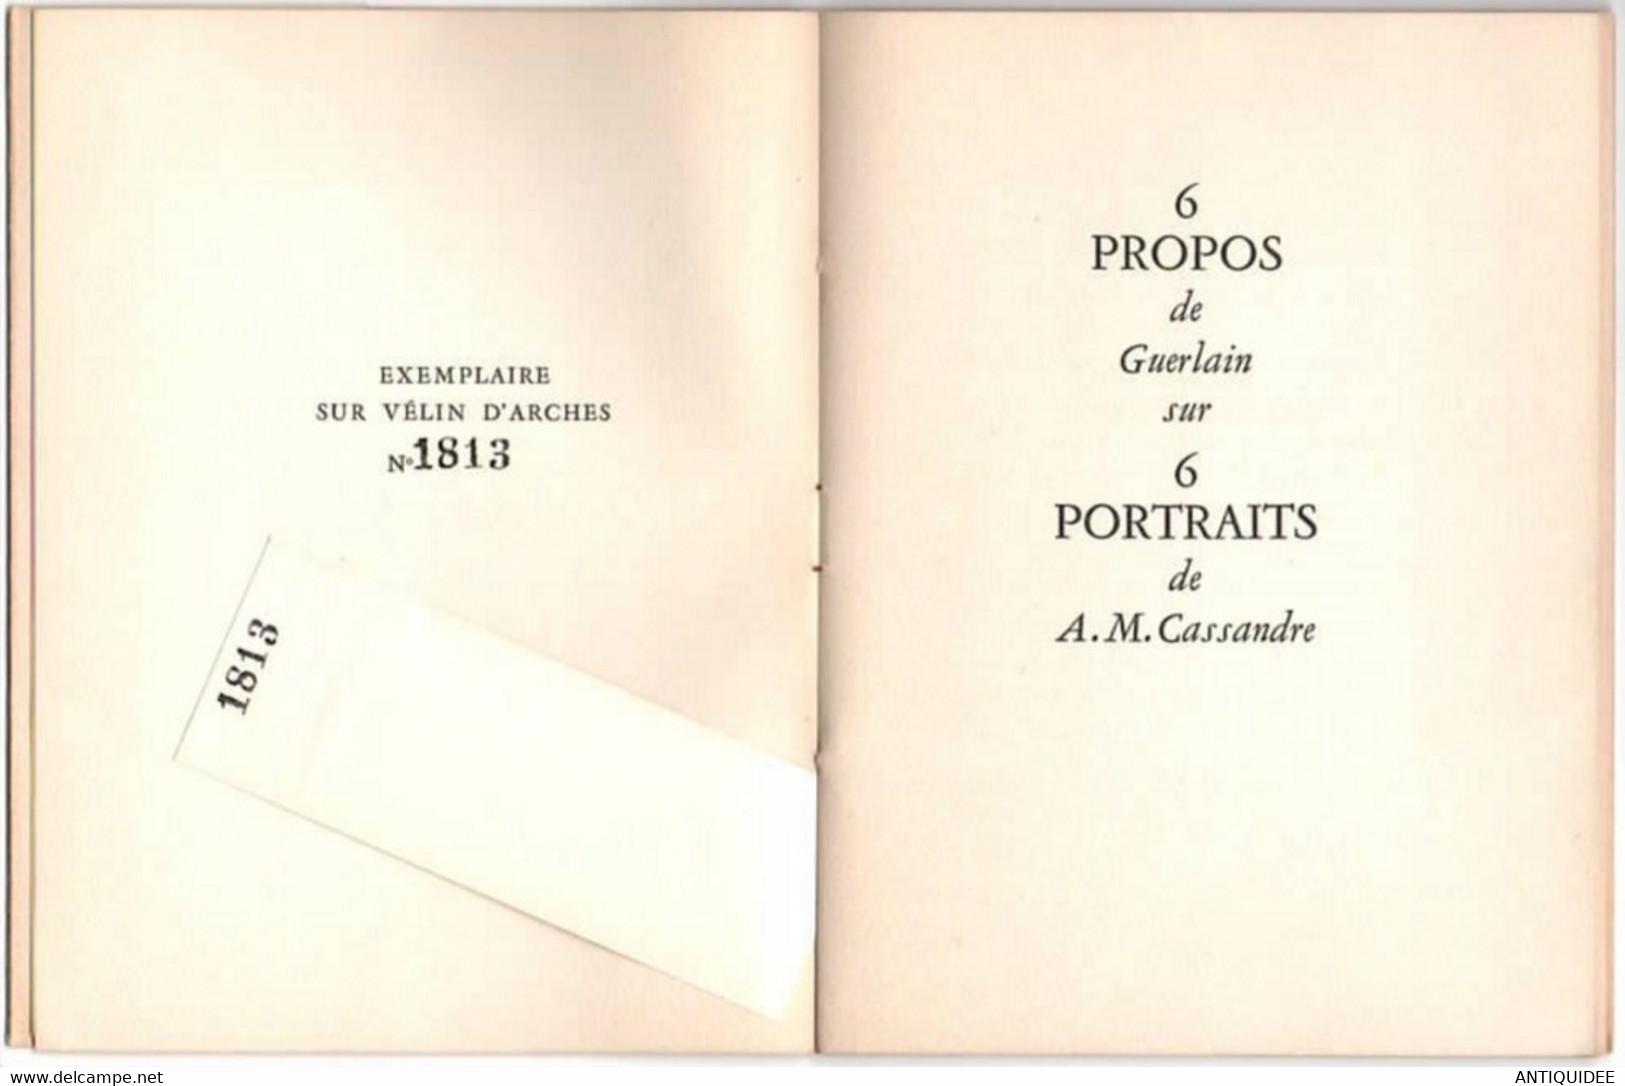 GUERLAIN - CASSANDRE - Edition 1953 - Exemplaire numéroté sur Vélin d'Arches -